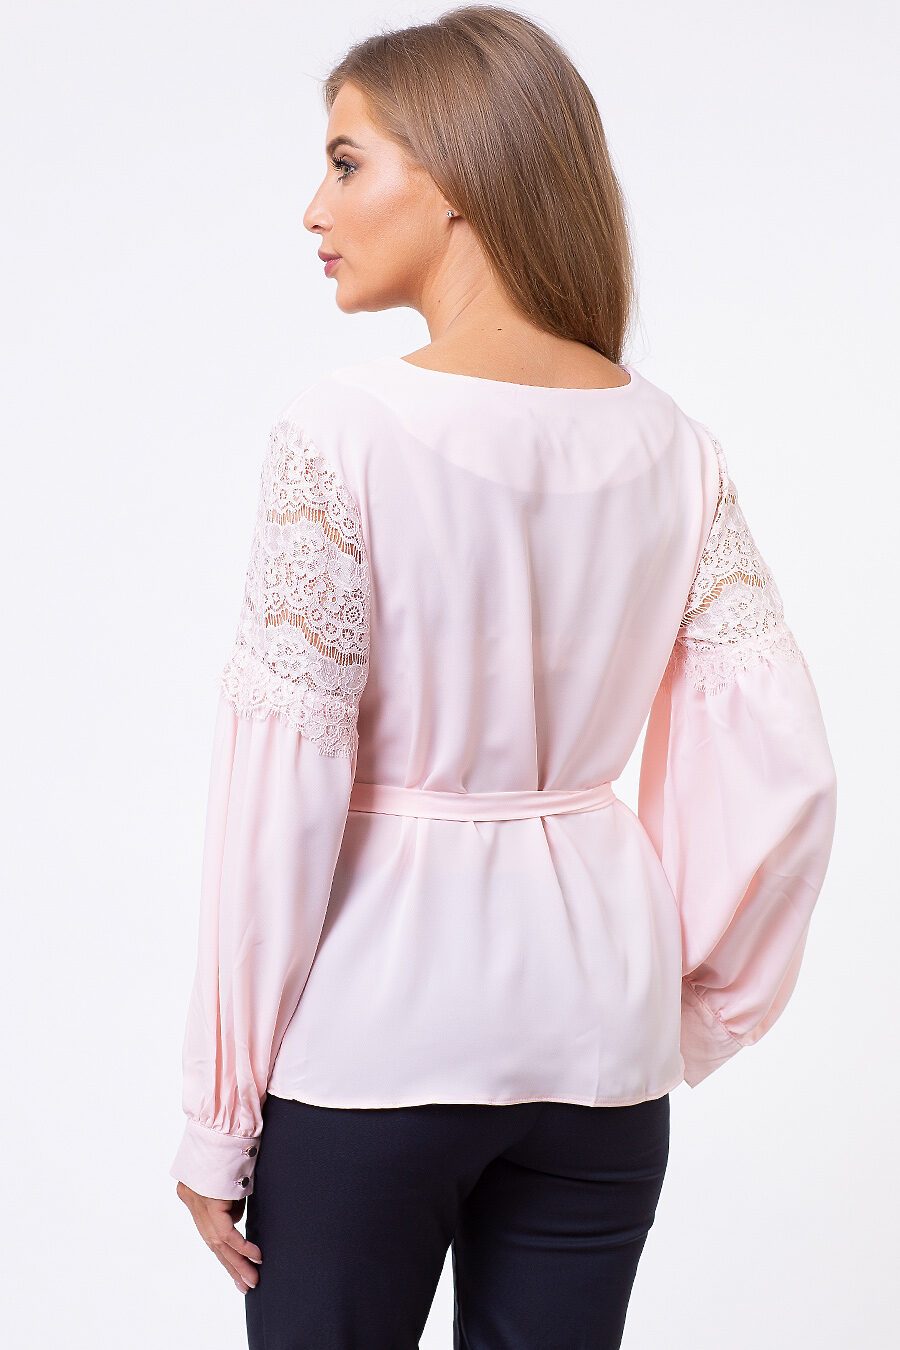 Блуза TUTACHI (125211), купить в Moyo.moda